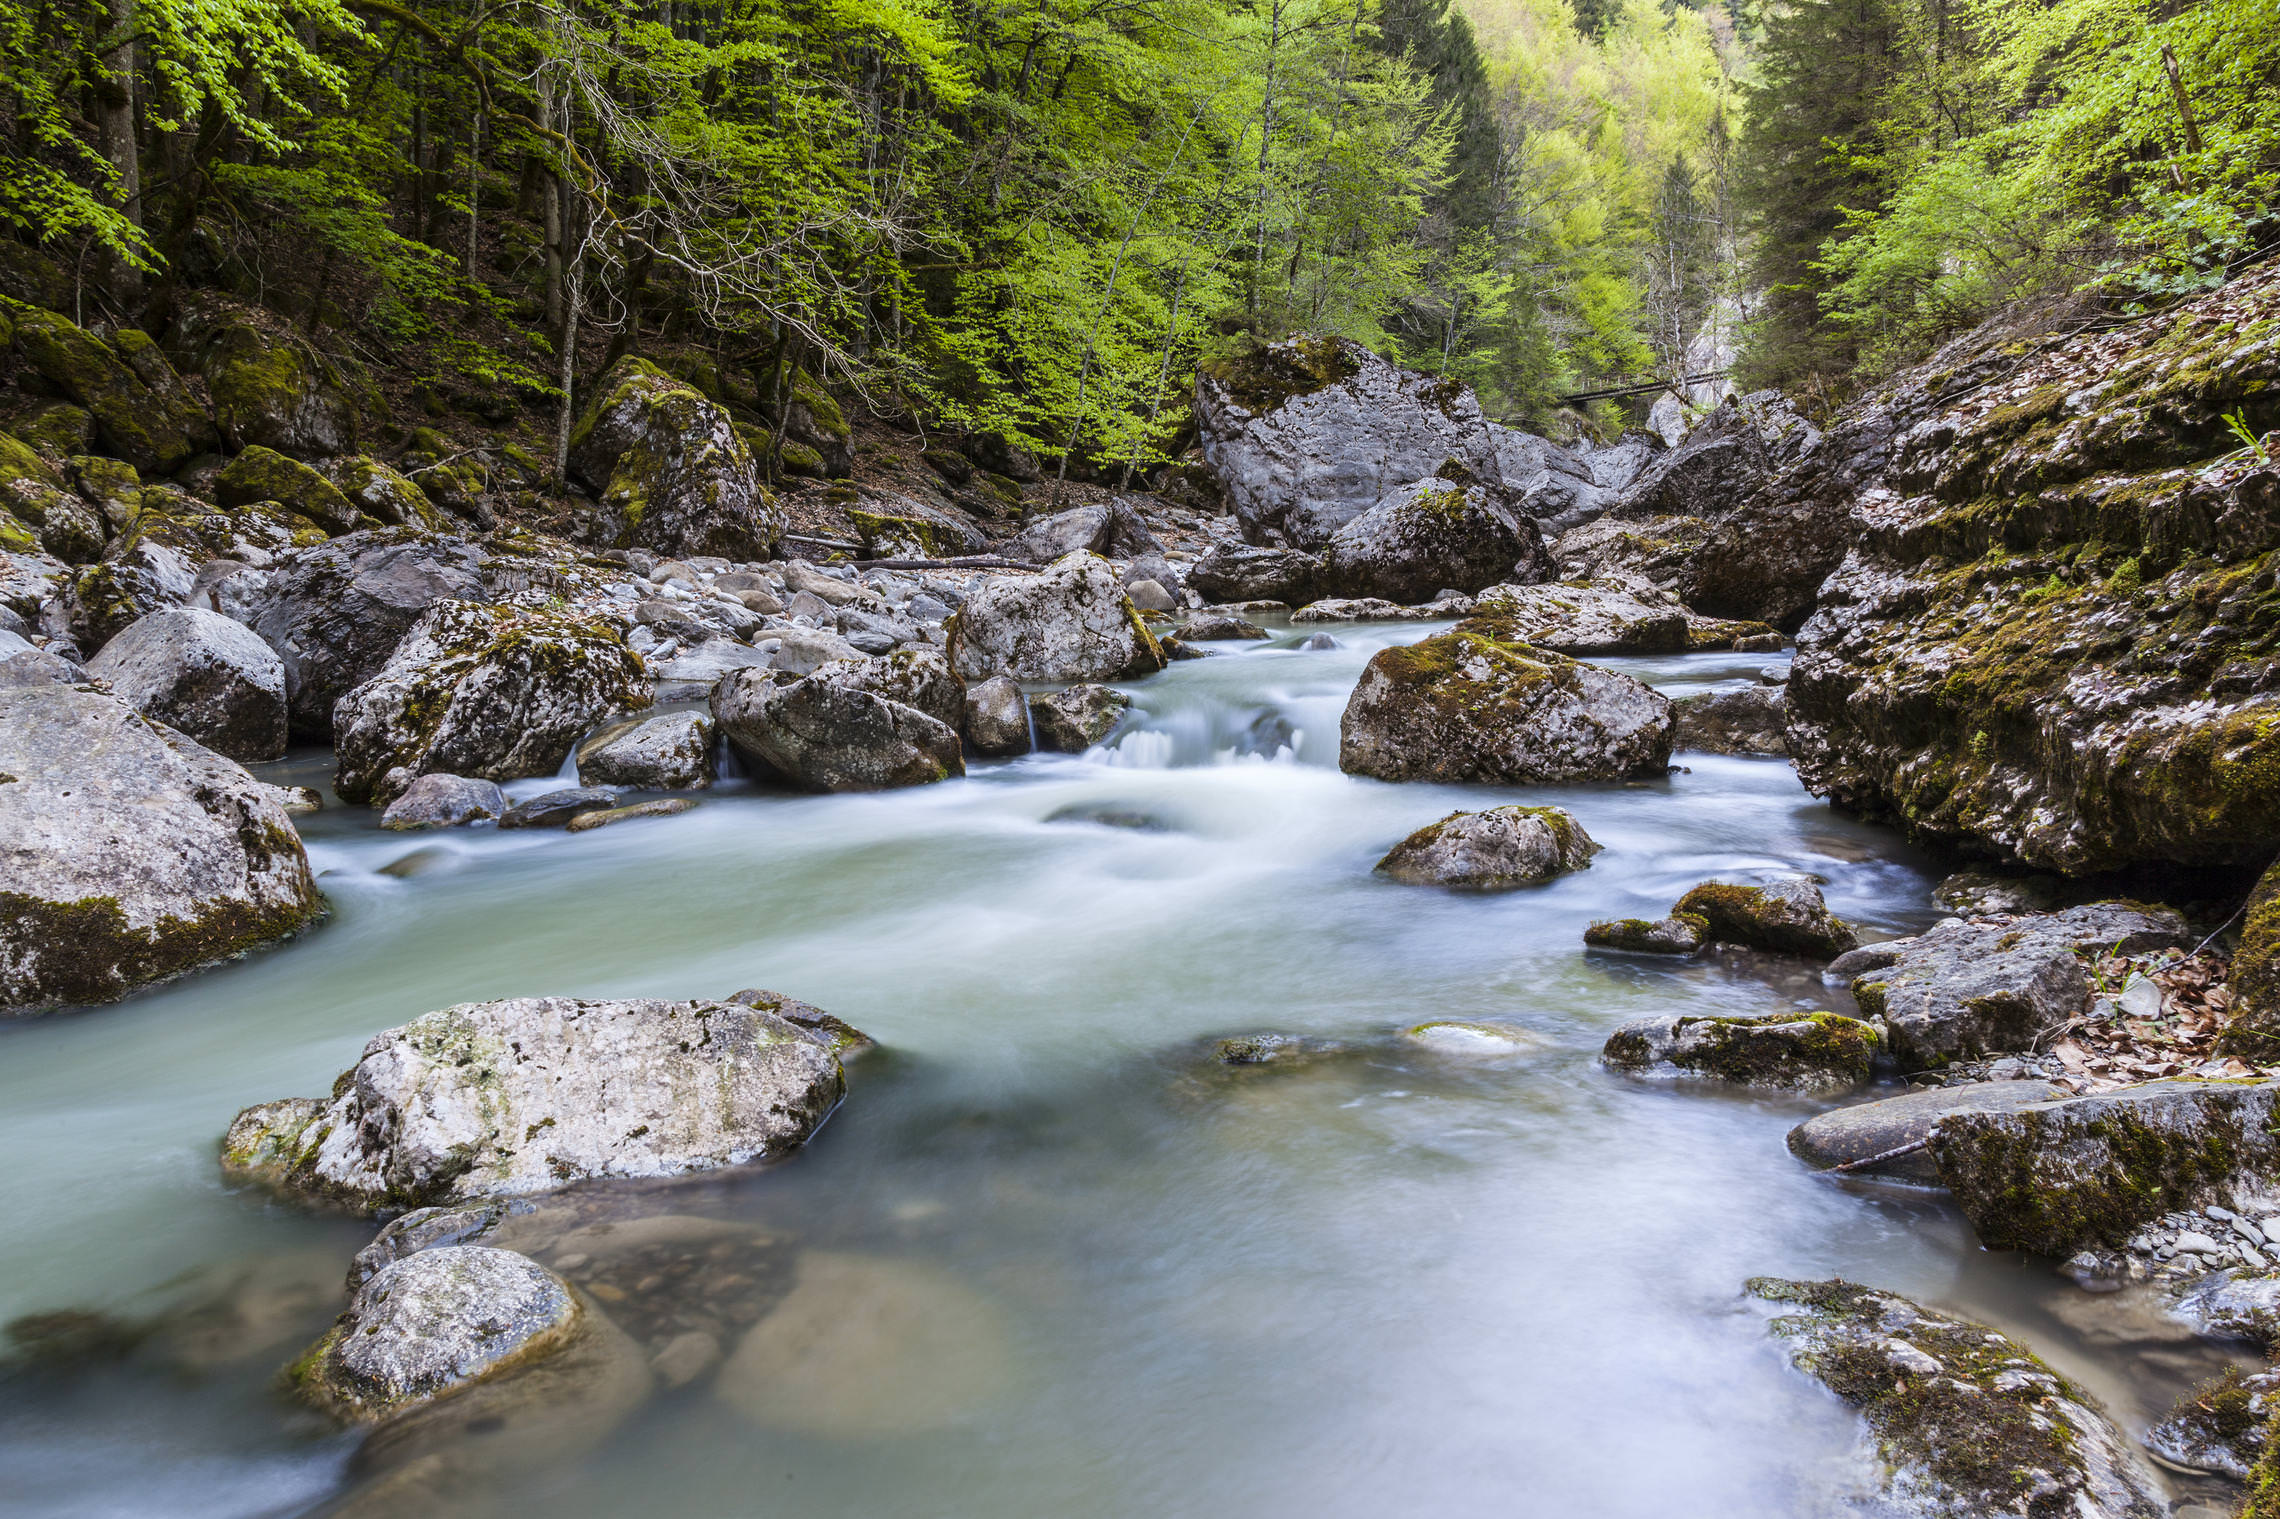 Реки Швейцарии